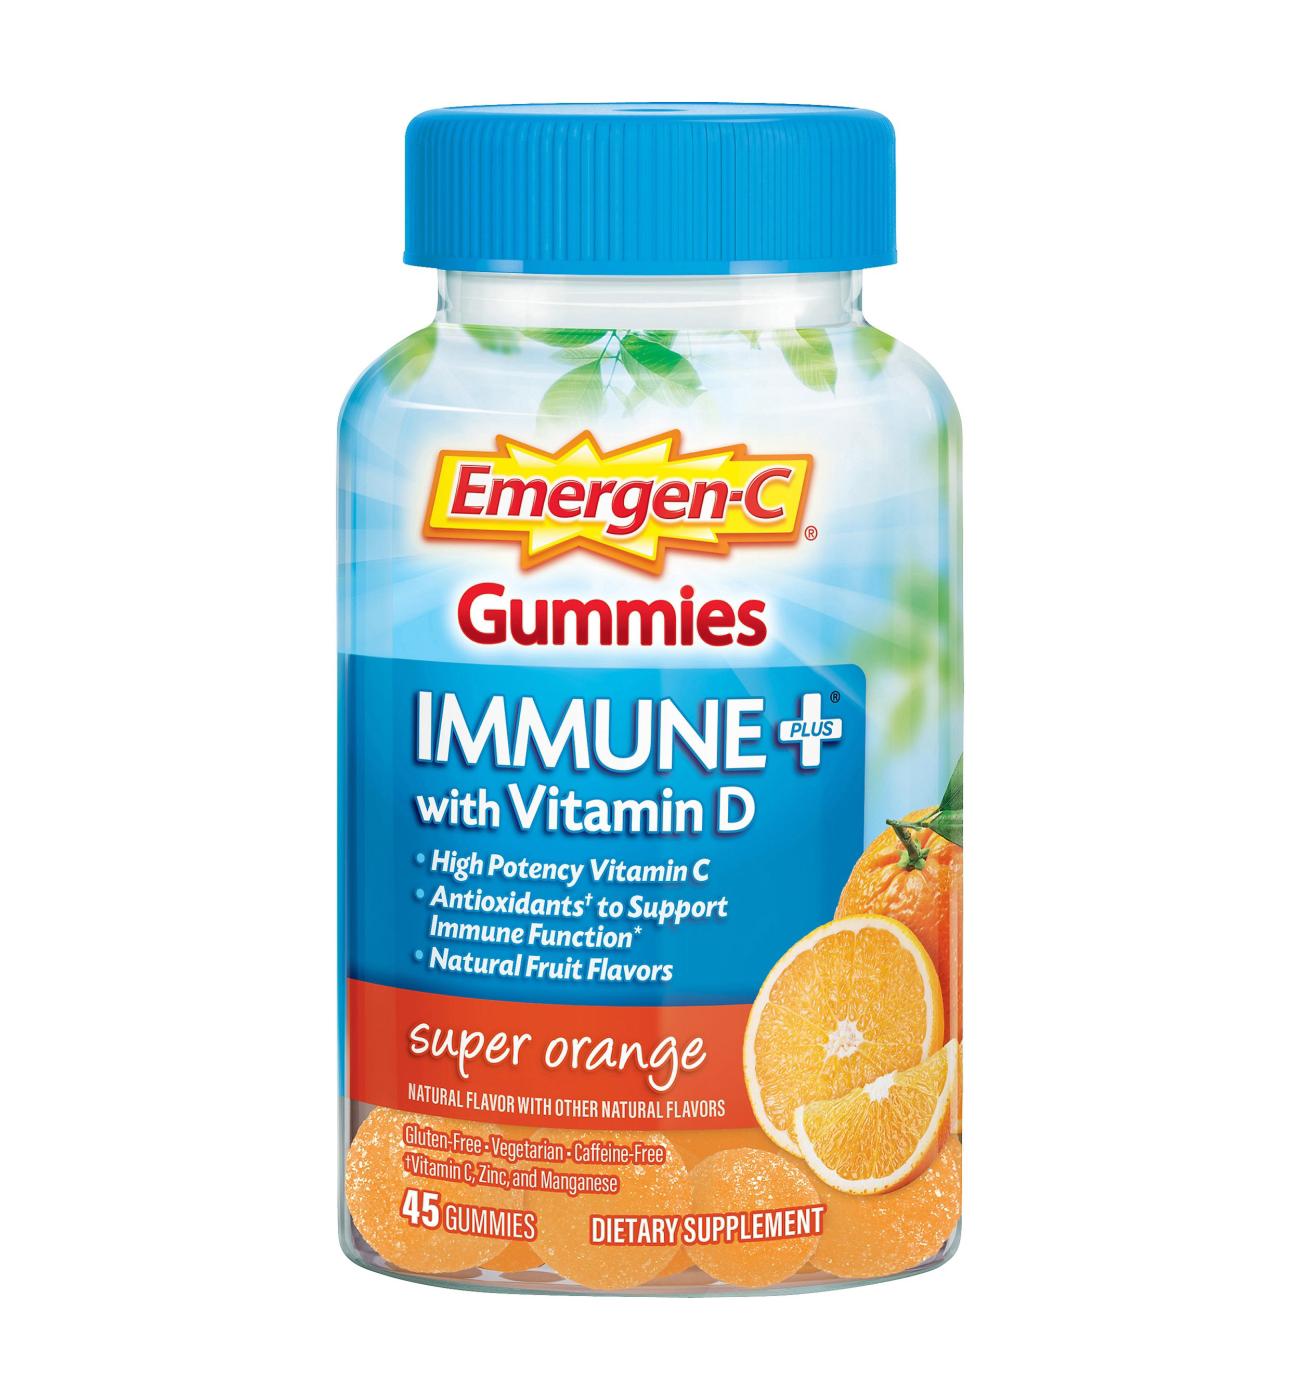 Emergen-C Immune+ with Vitamin D Gummies - Super Orange; image 1 of 7